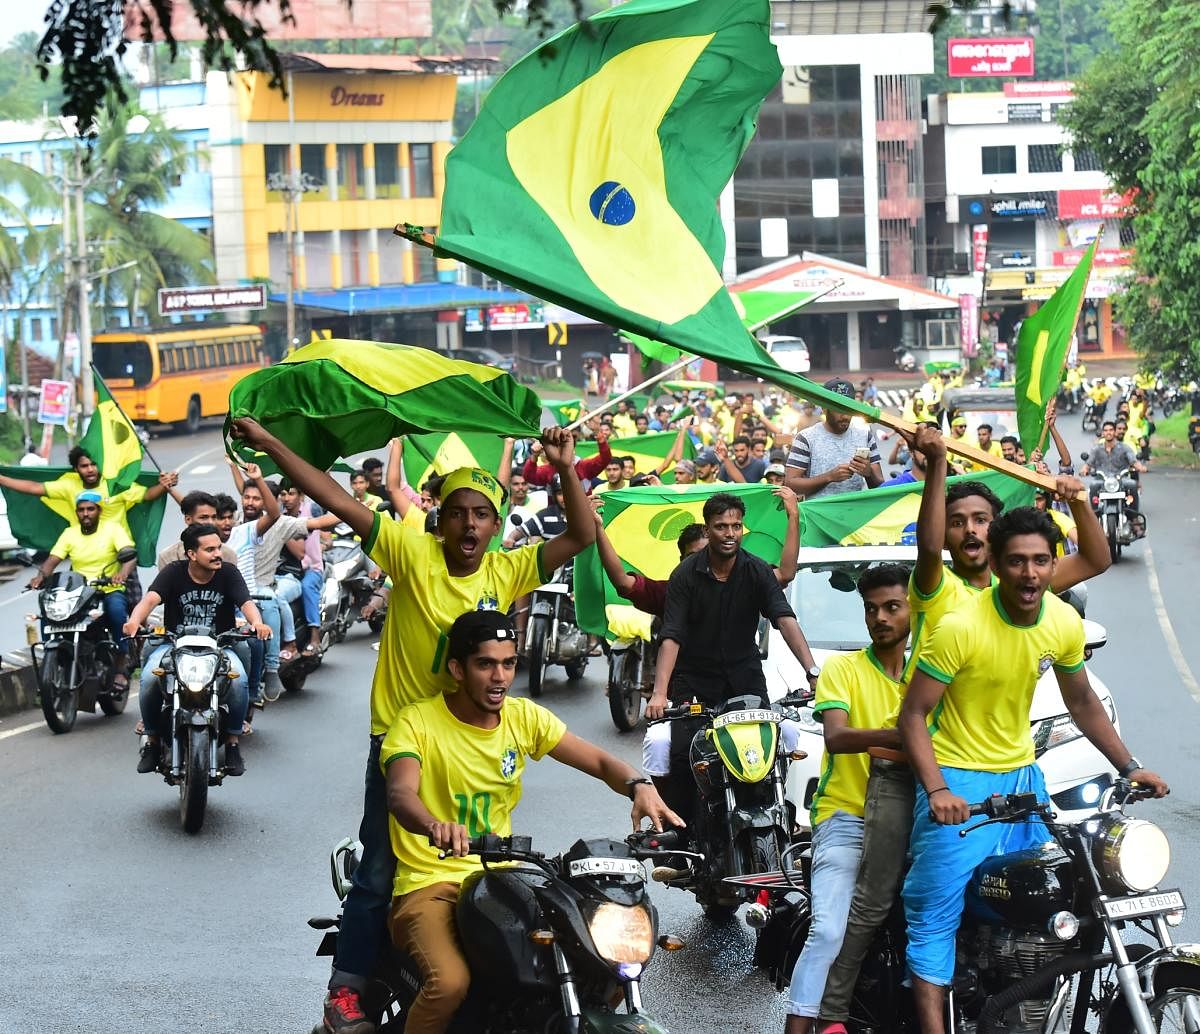 Brazil fans take out a bike rally in Malappuram. (DH Photo)